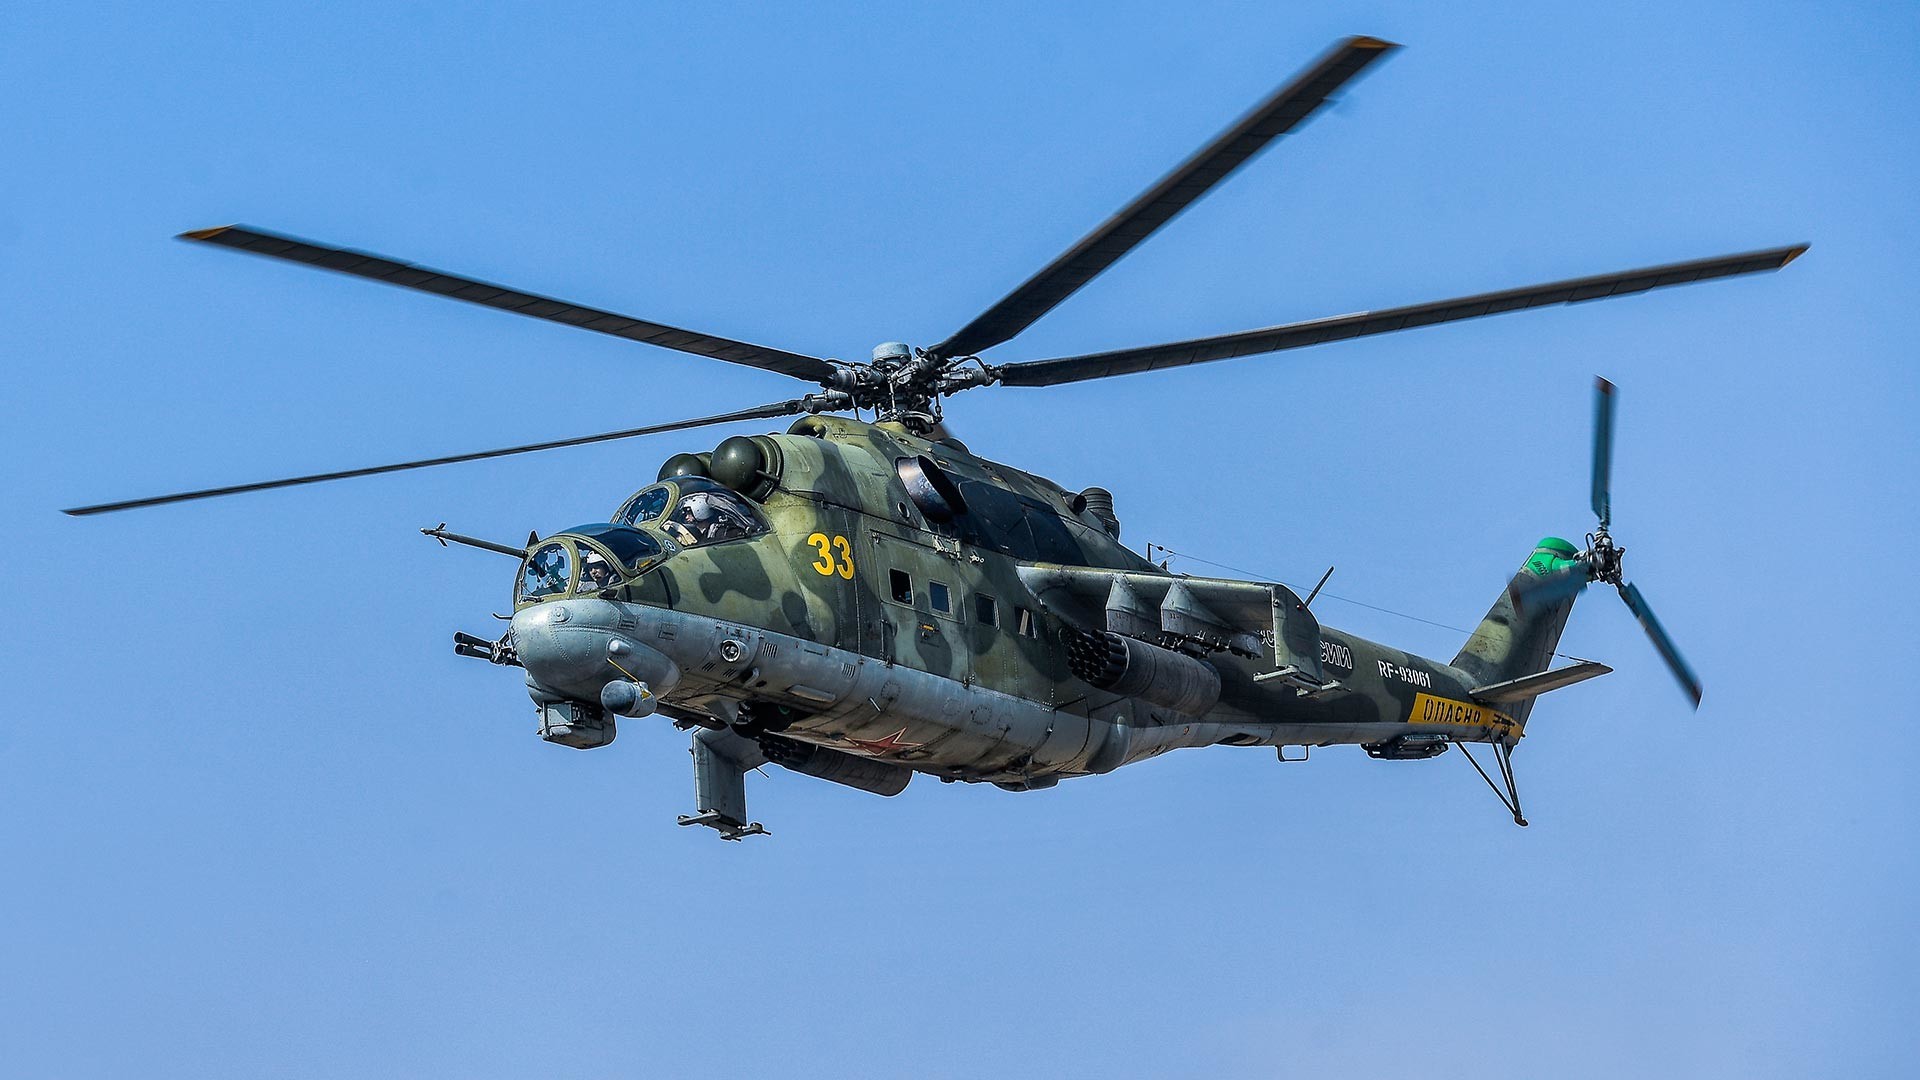 Mi-24

